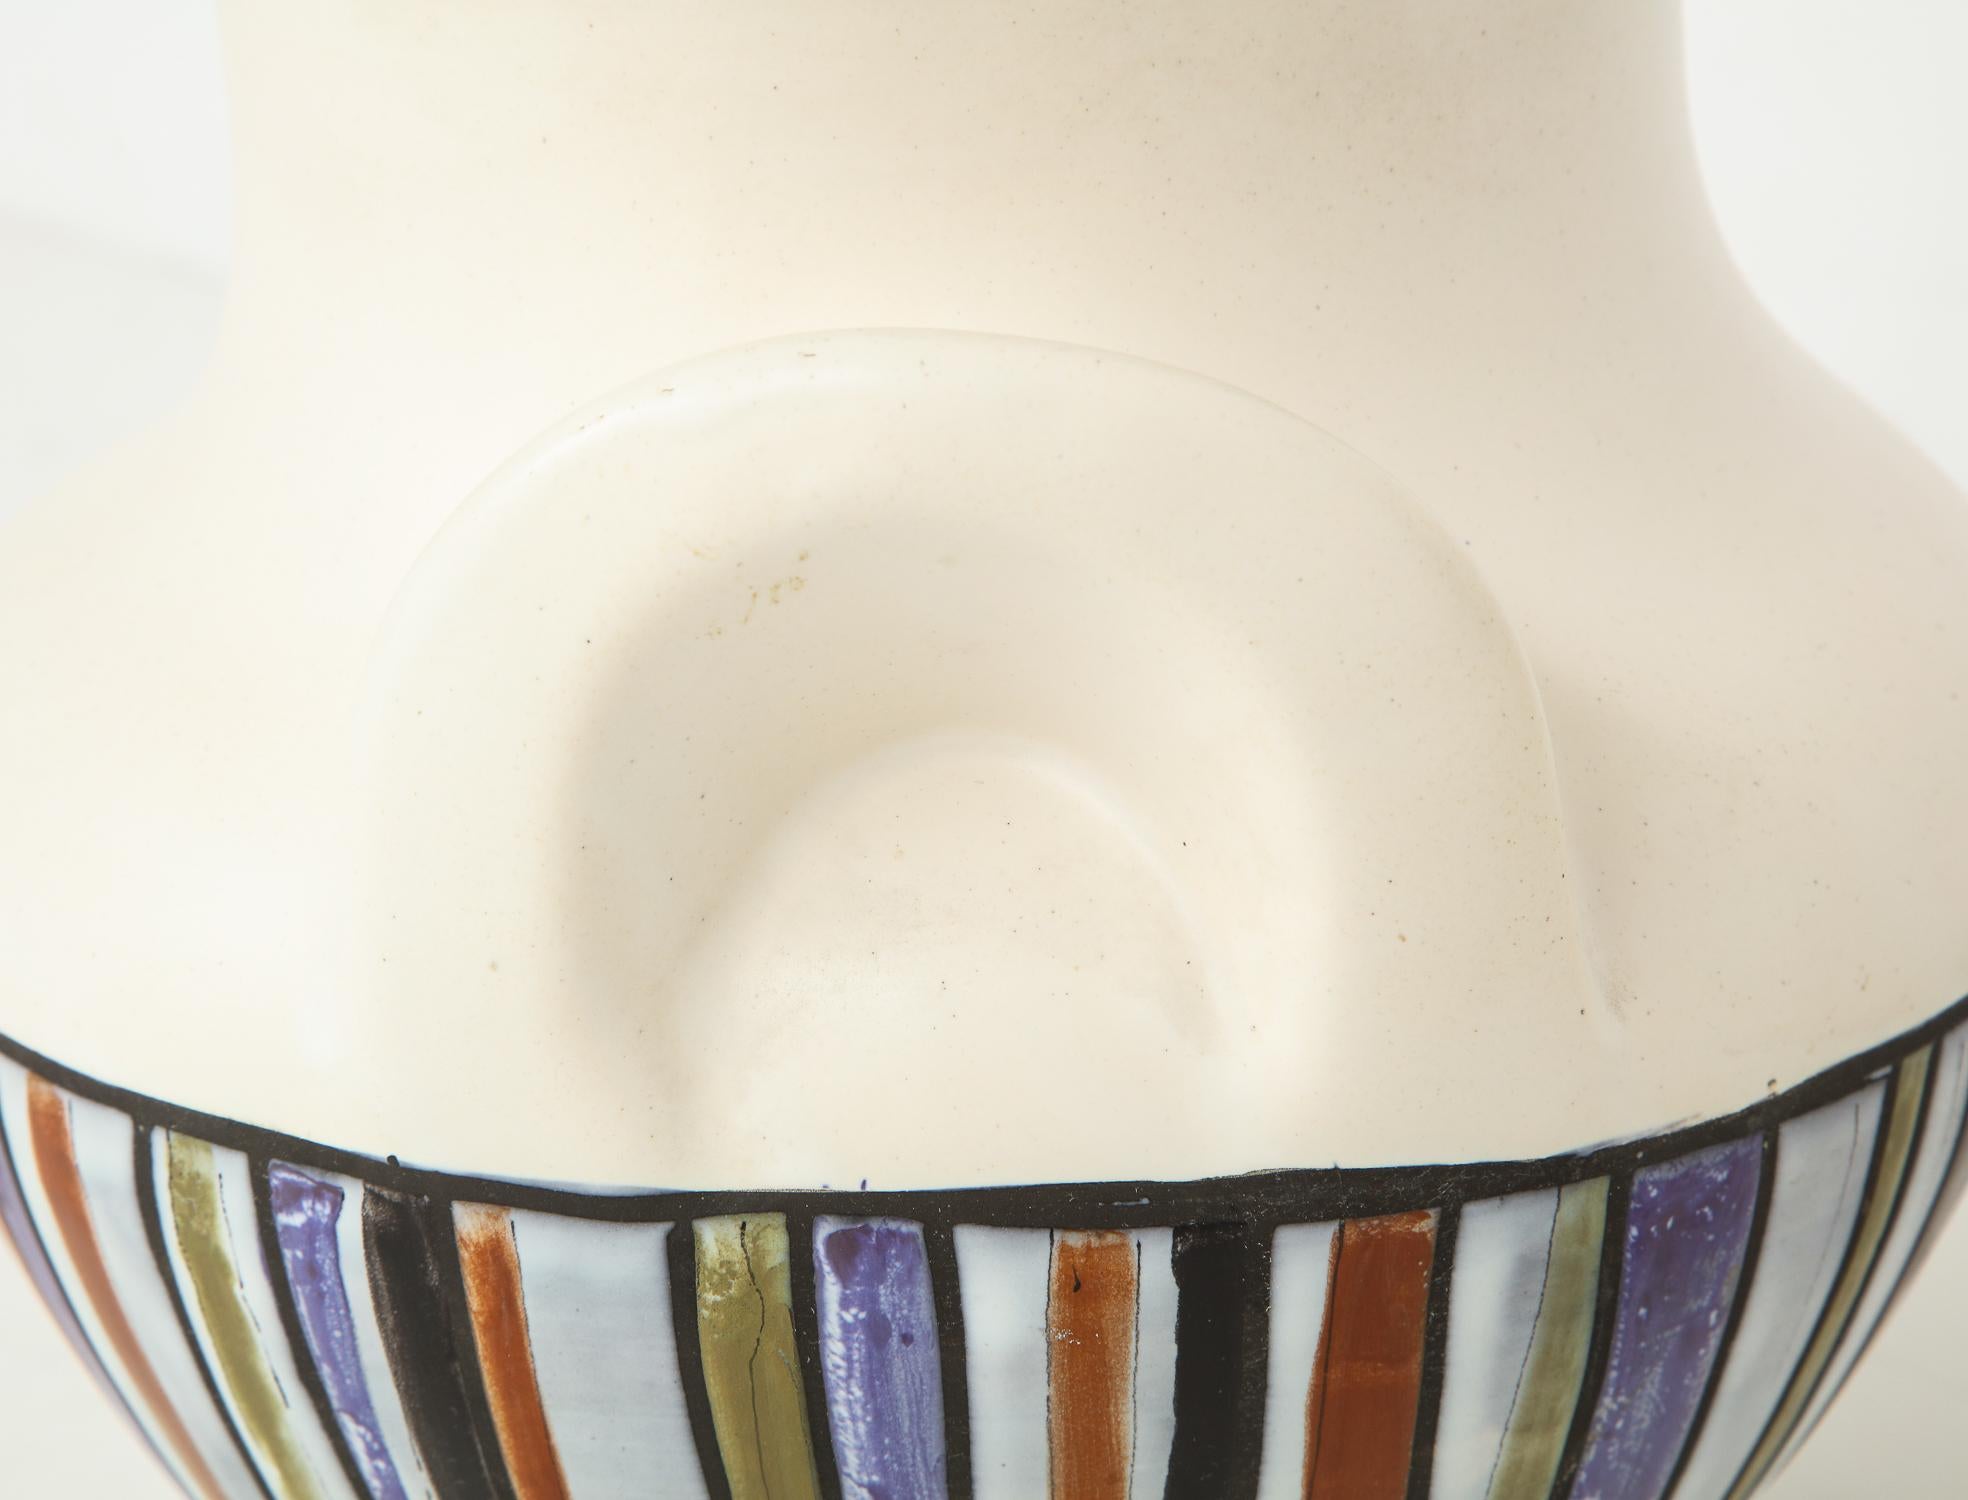 Large Roger Capron Oreilles Vase with Polychrome Decoration (Steingut)